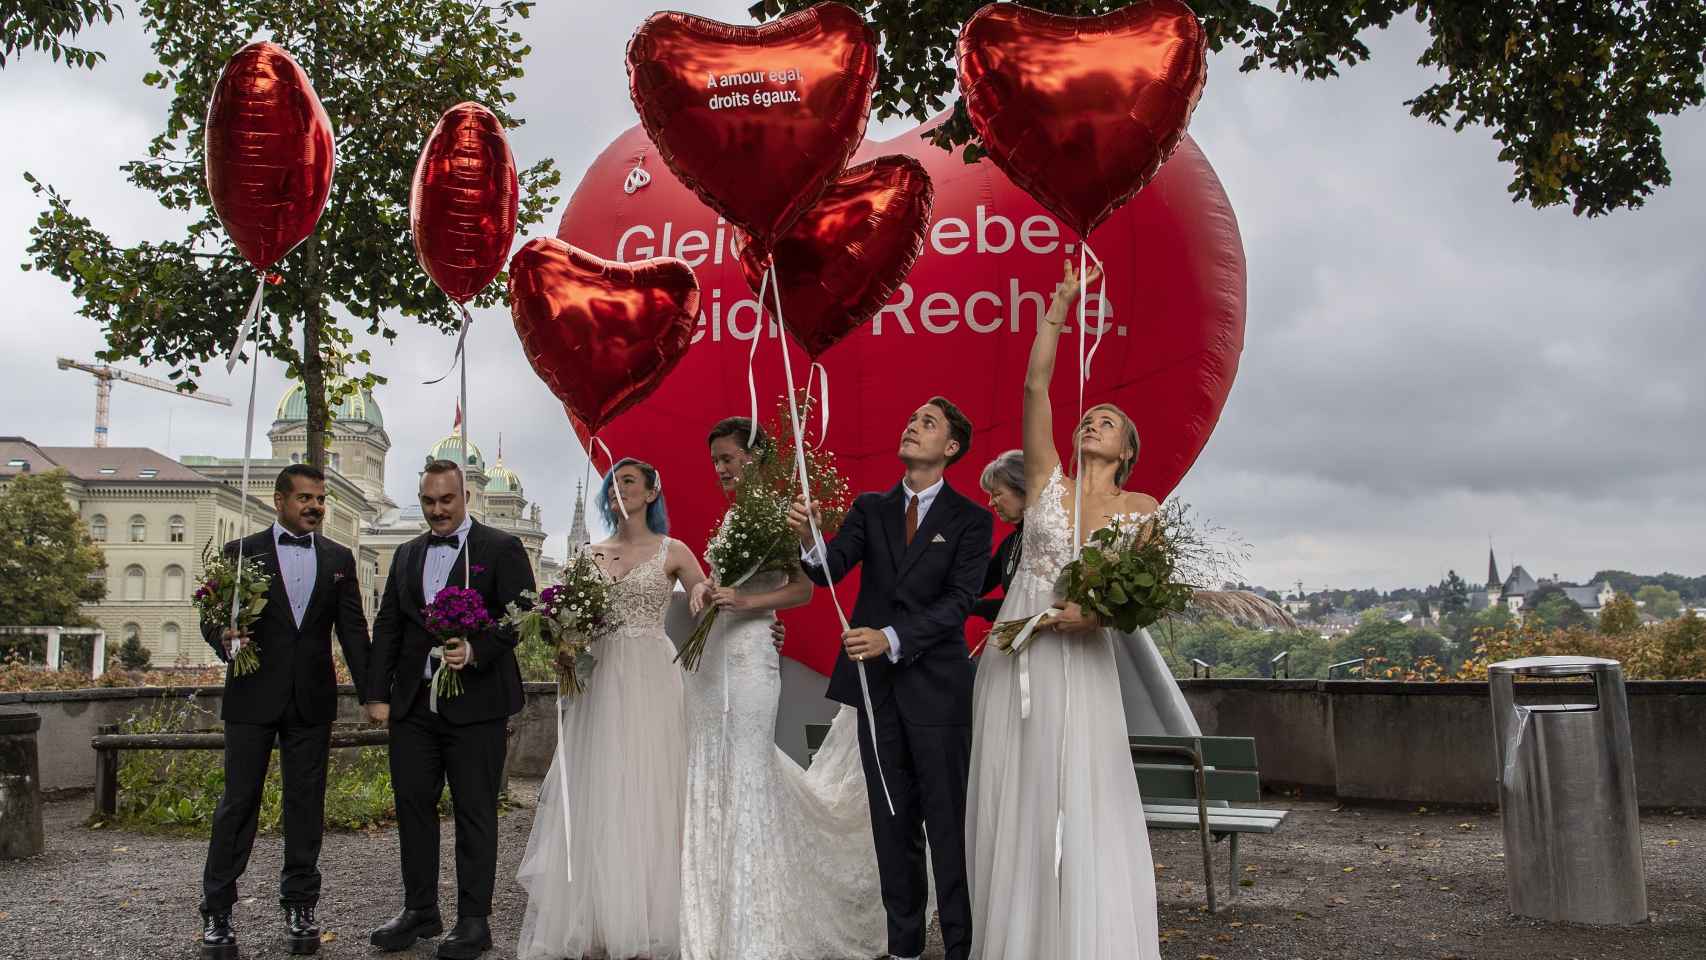 Parejas celebran la aprobación del matrimonio igualitario en Berna, Suiza.